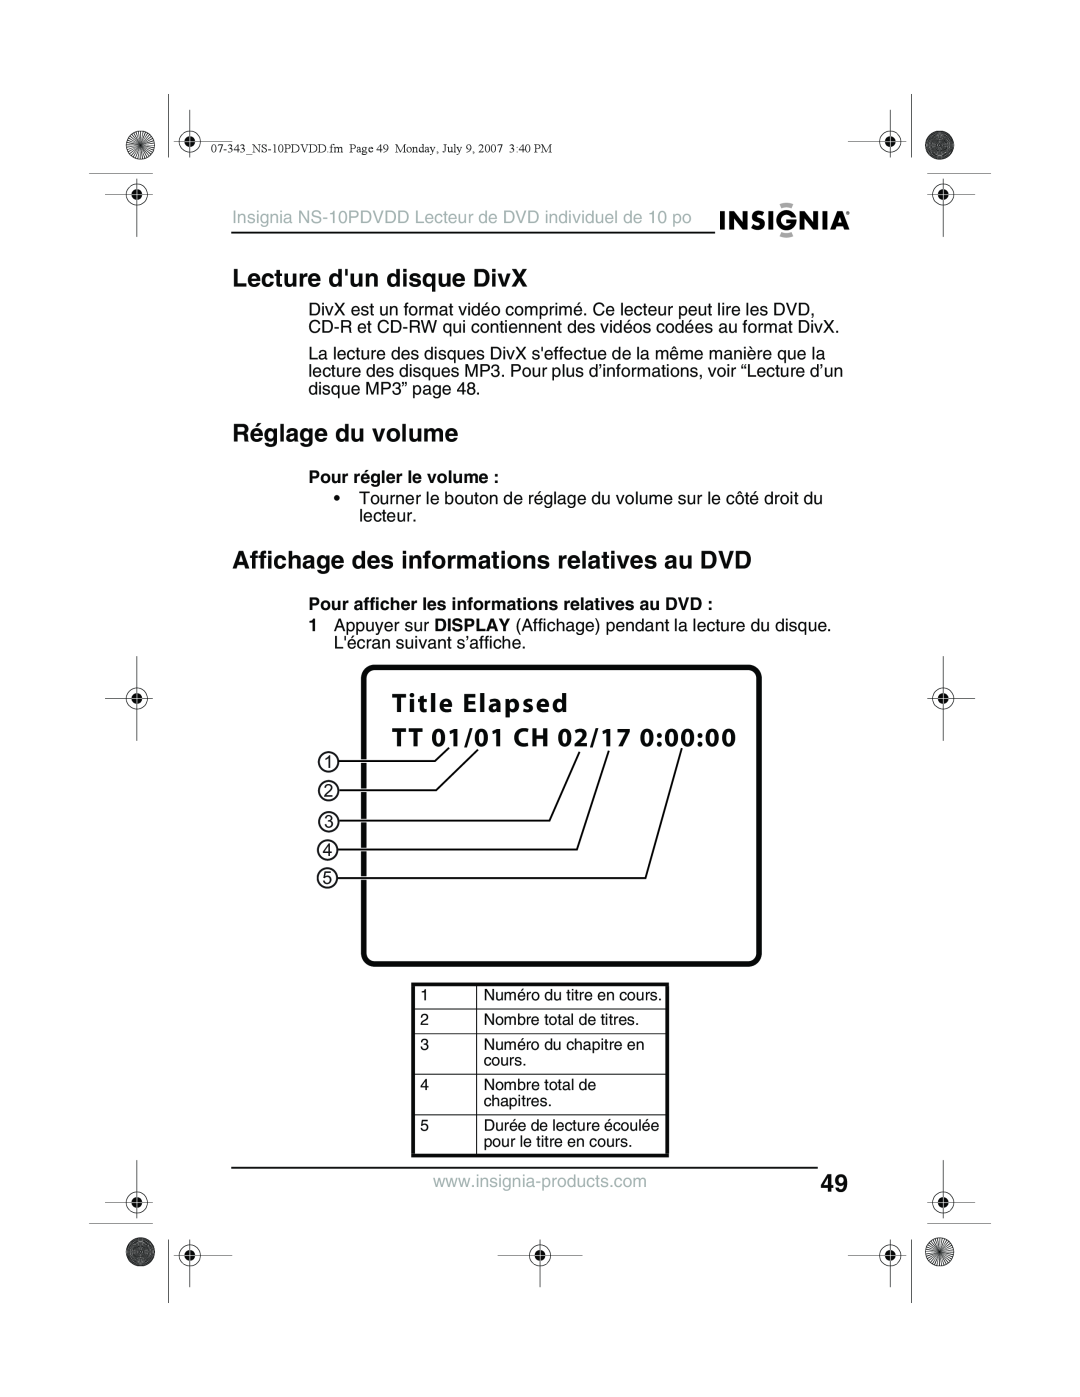 Insignia NS-10PDVDD manual Lecture dun disque DivX, Réglage du volume, Affichage des informations relatives au DVD 